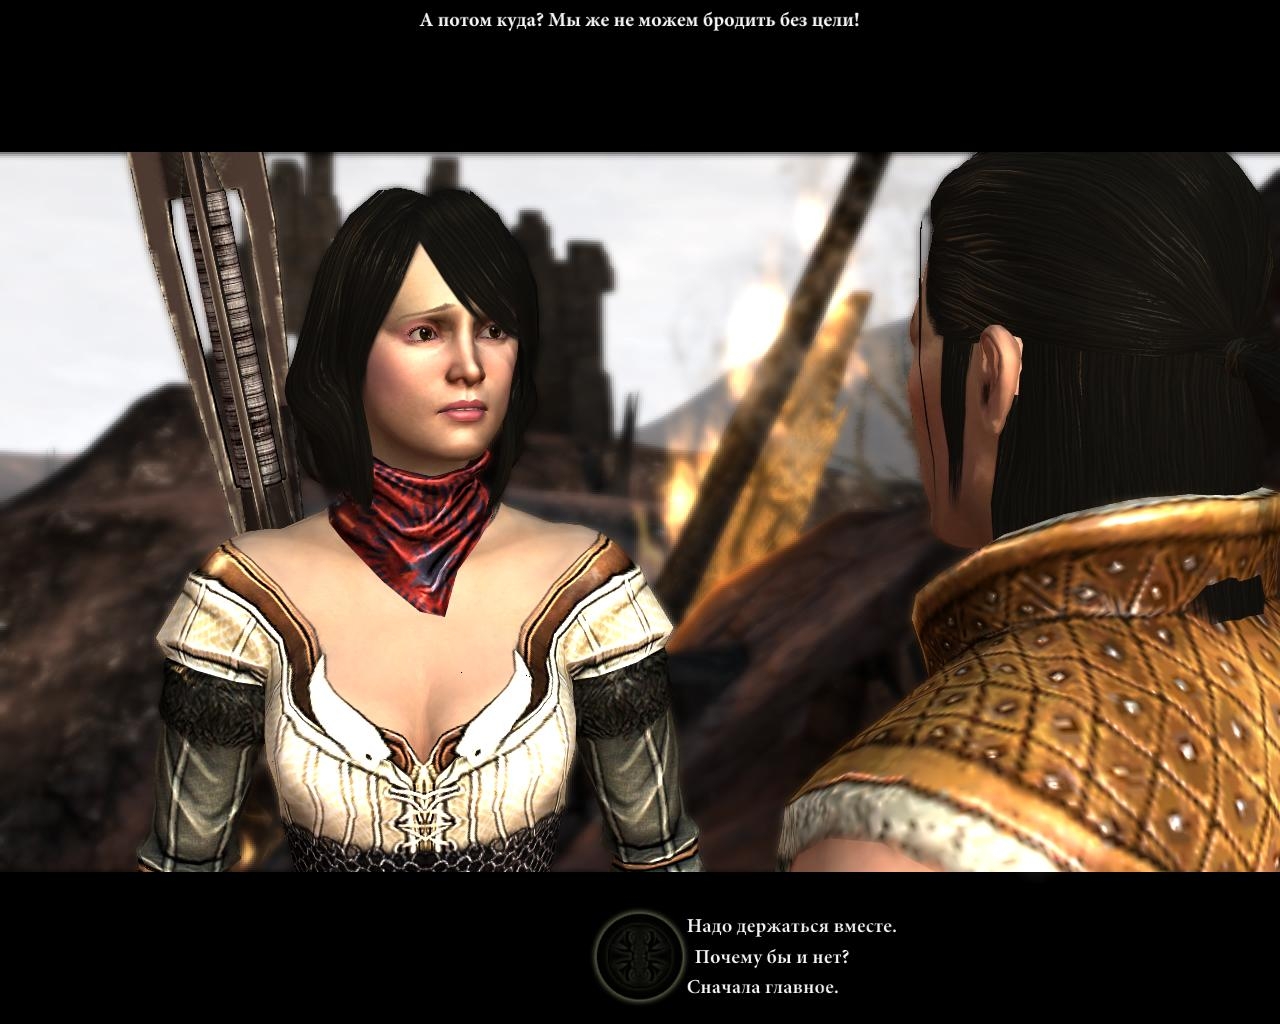 Скриншот из игры Dragon Age 2 под номером 57